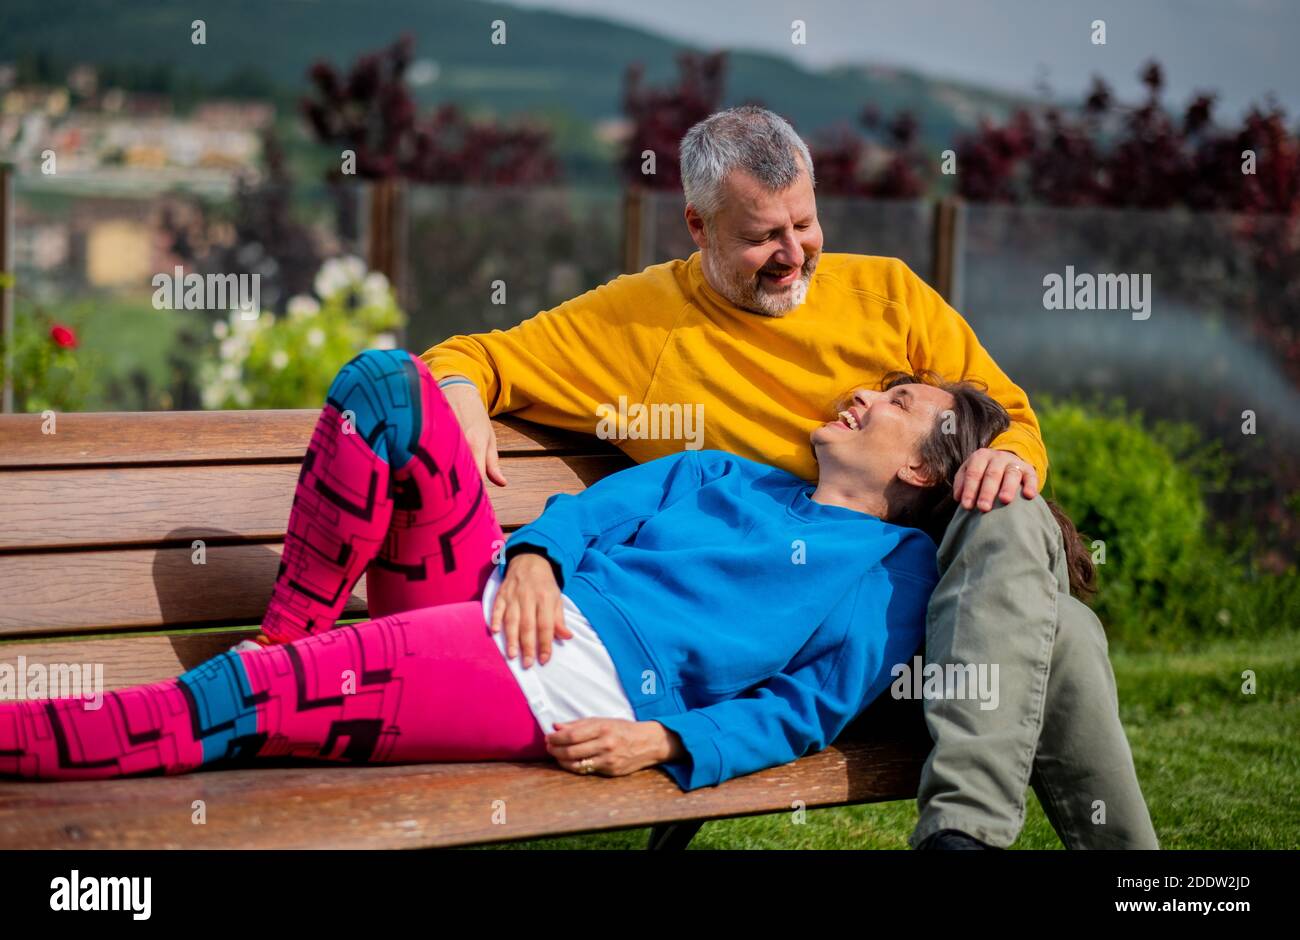 Attraktives Ehepaar im Park entspannen - glückliche Liebhaber Und sportliches Paar auf der Bank - Paar sitzt auf Außenbank zusammen Stockfoto